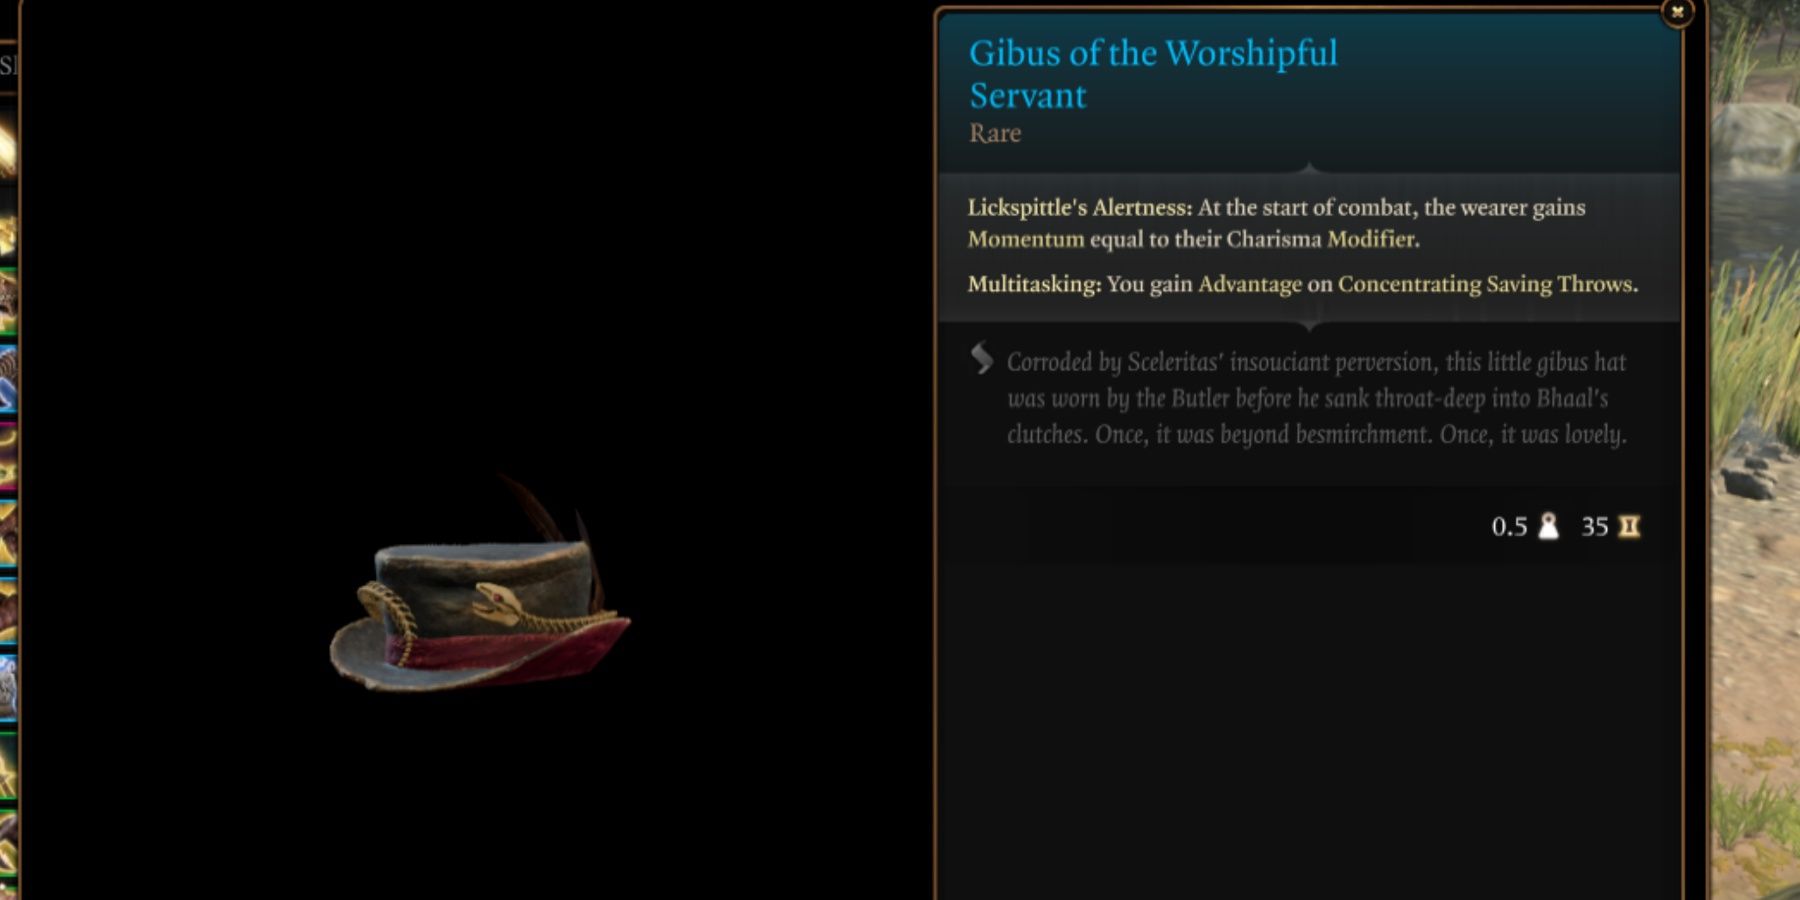 BG3 Gibus of the Worshipful Servant in-game item menu description